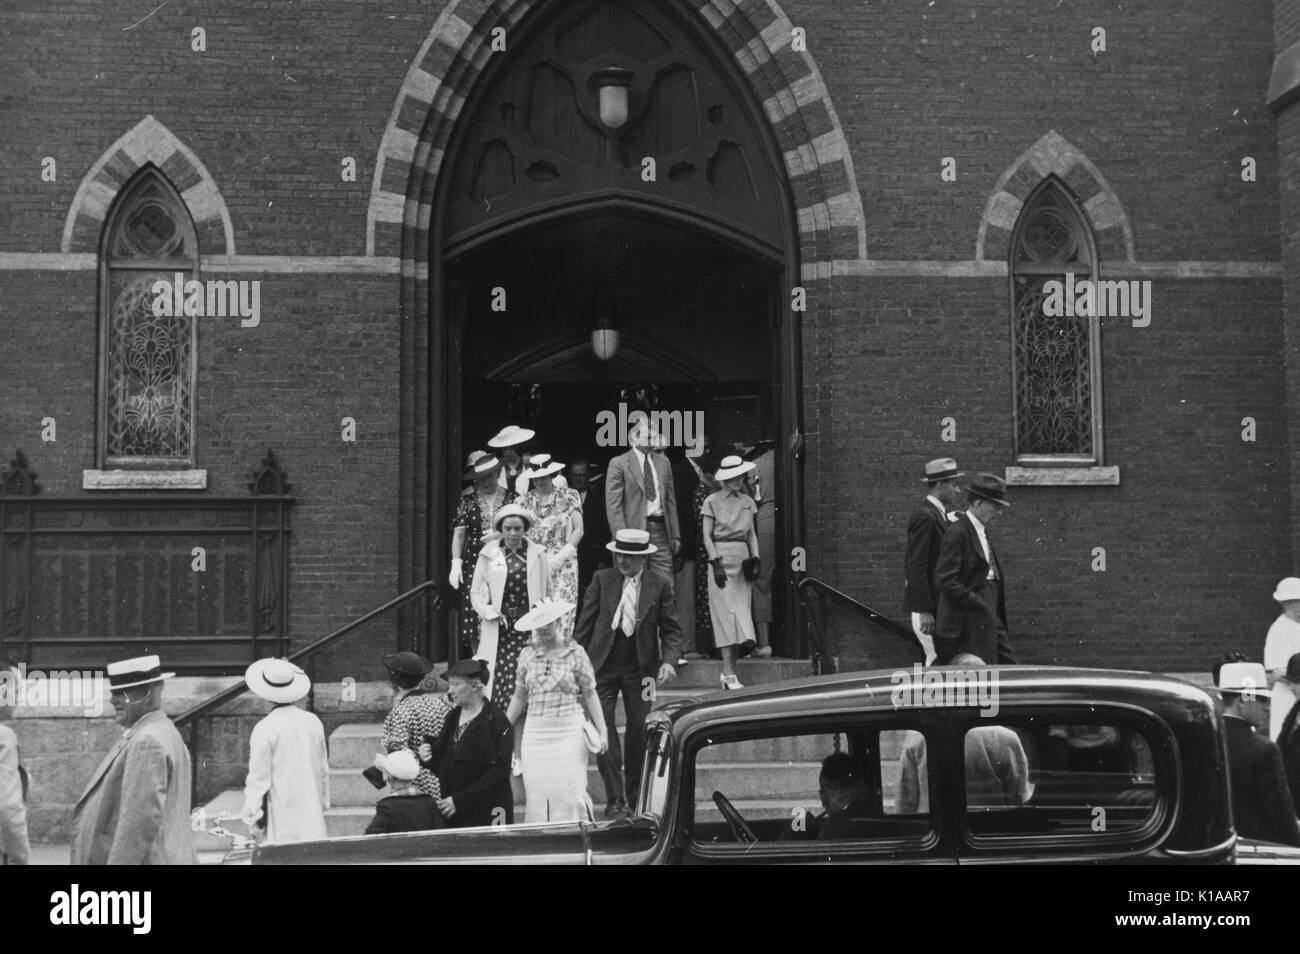 Groupe d'hommes bien habillés et les femmes, les hommes en costumes et chapeaux, les femmes en robes et chapeaux, gants, à quitter une église, voiture garée en face, Manchester, New Hampshire, 1937. À partir de la Bibliothèque publique de New York. Banque D'Images